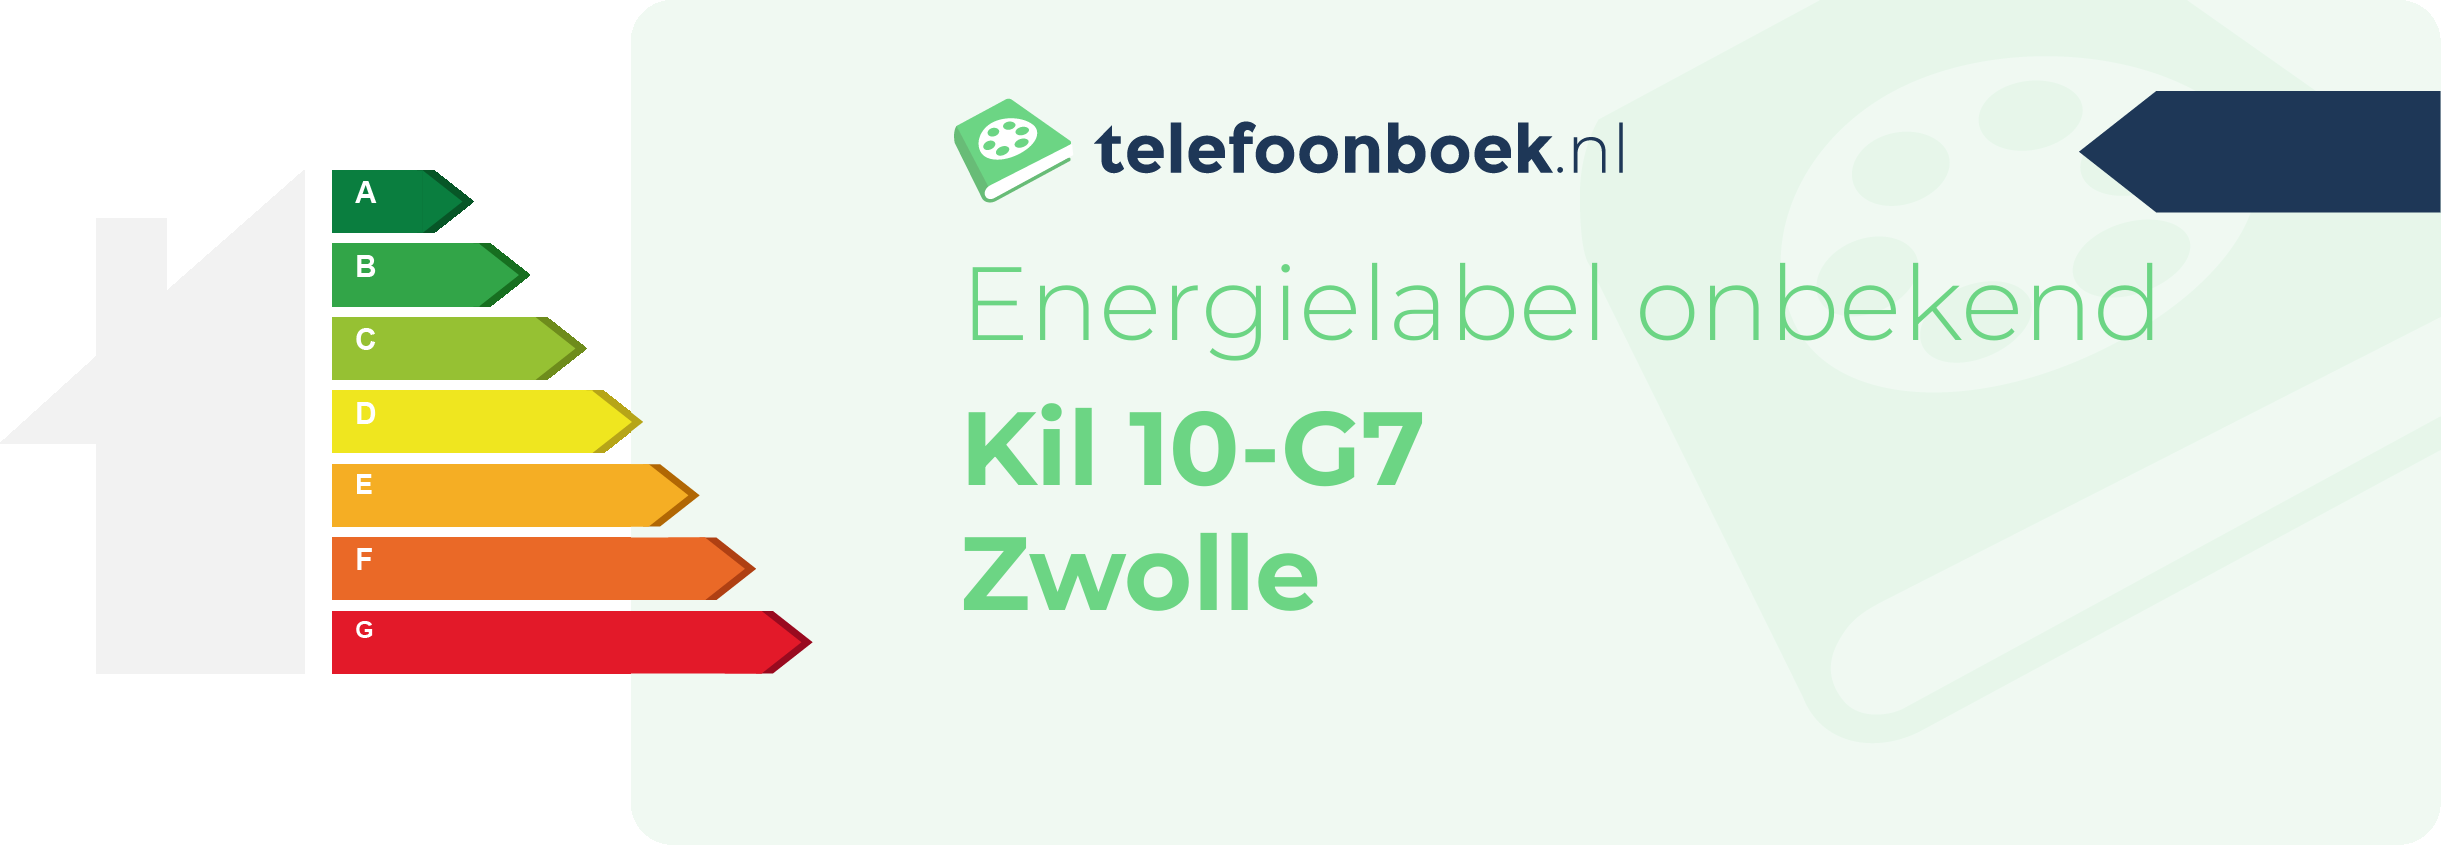 Energielabel Kil 10-G7 Zwolle